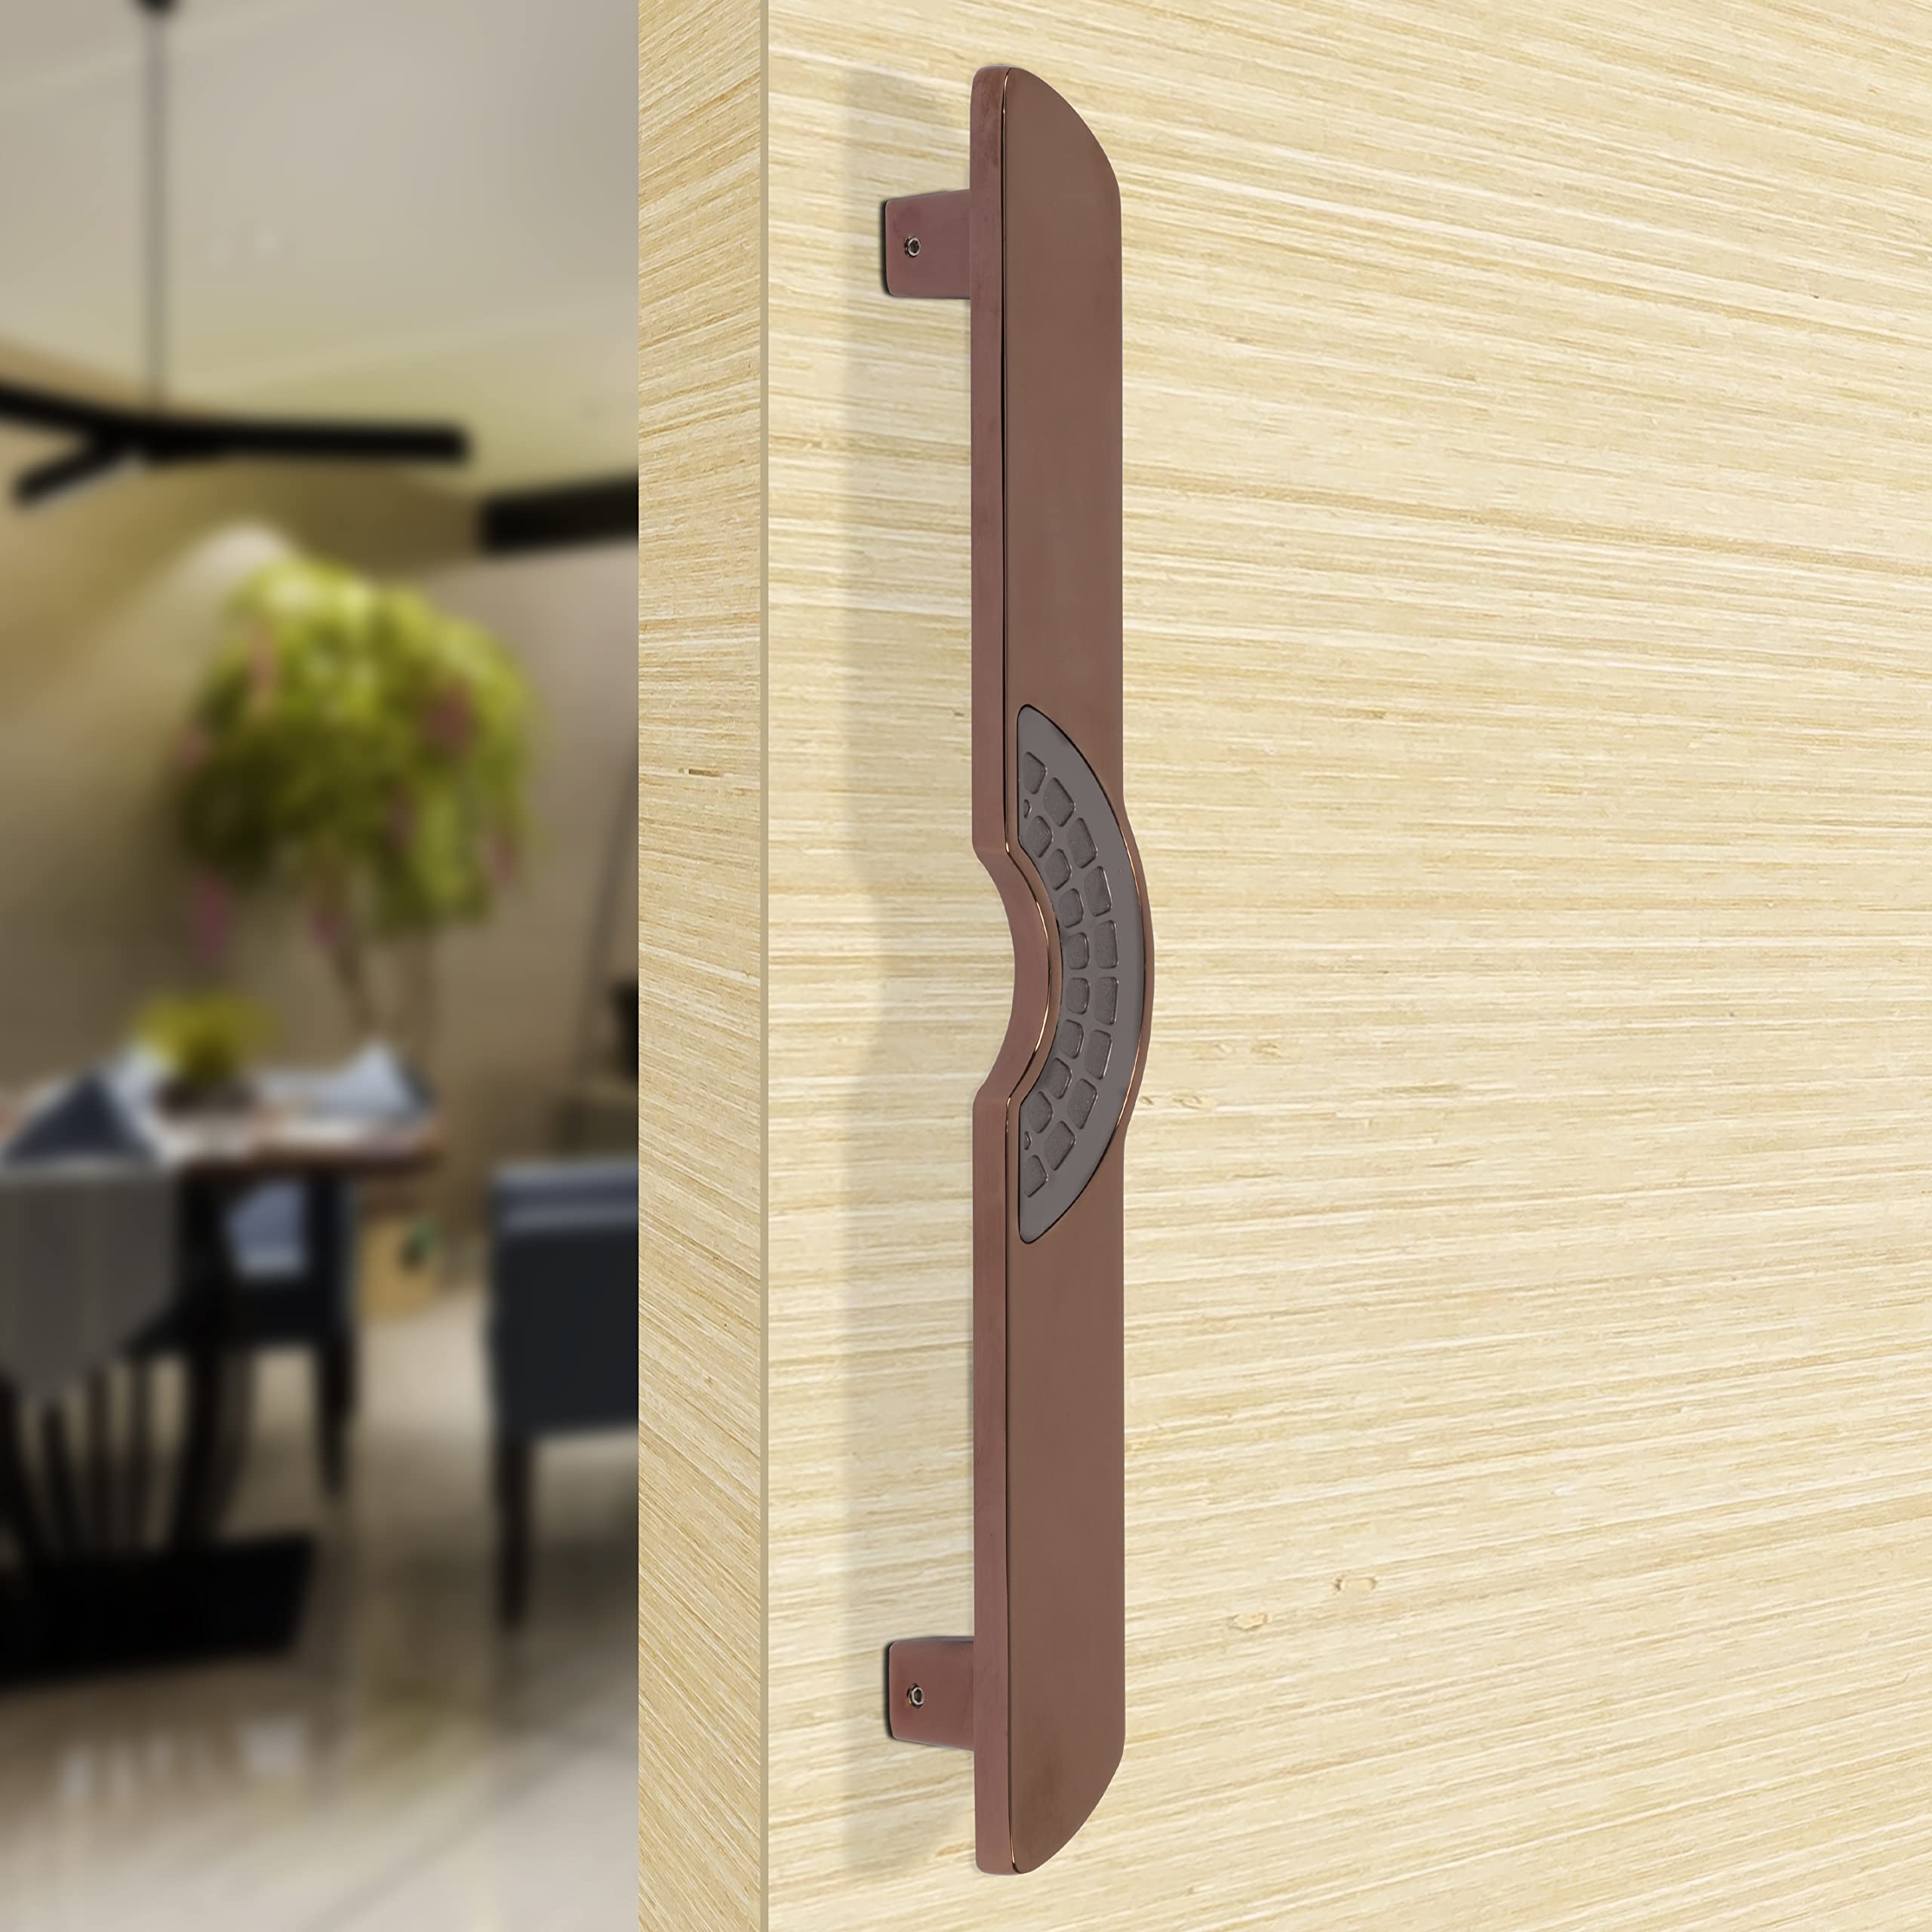 Plantex Ultron Door Handle/Door & Home Decor/15 Inch Main Door Handle/Door Pull Push Handle – Pack of 1 (316,Rose Gold and Grey Finish)